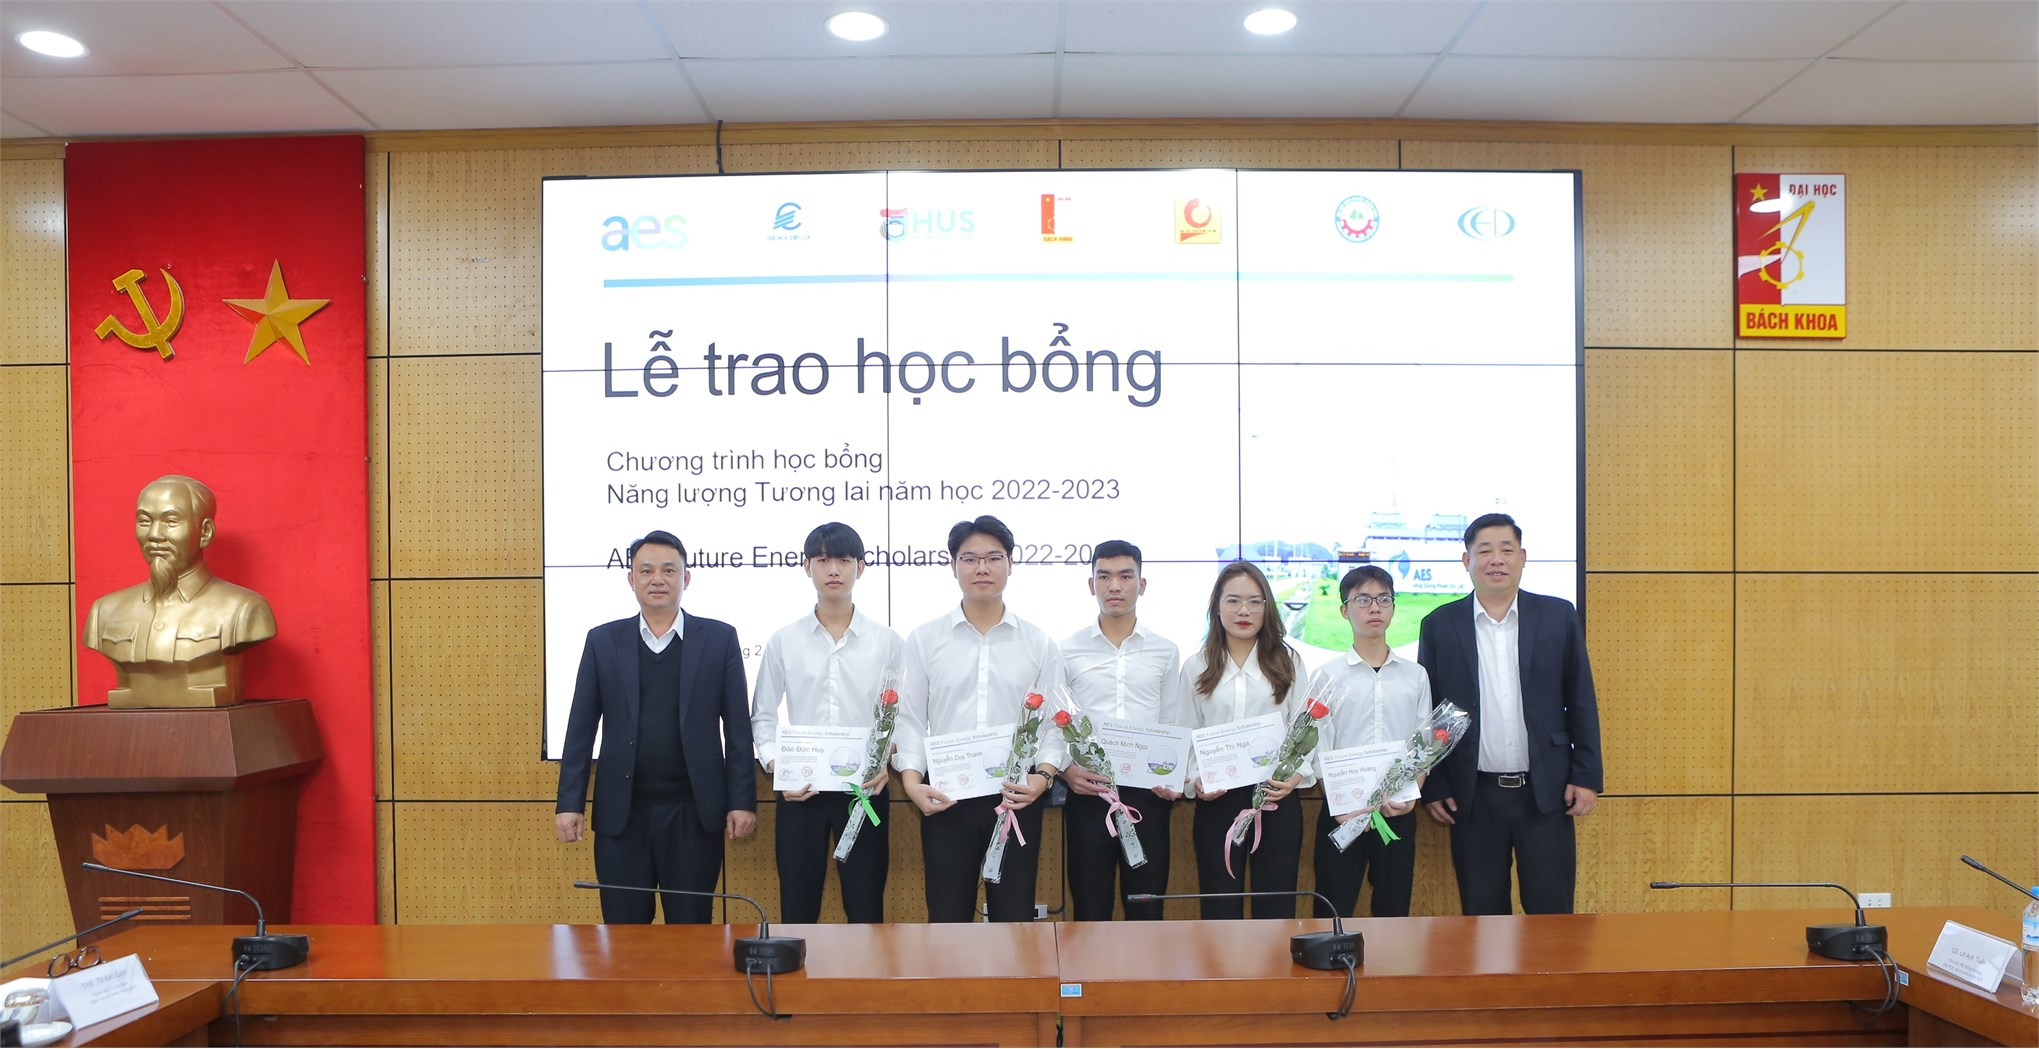 Sinh viên Khoa Điện và Khoa Cơ khí Trường Đại học Công nghiệp Hà Nội xuất sắc nhận học bổng Năng lượng tương lai năm học 2022 - 2023